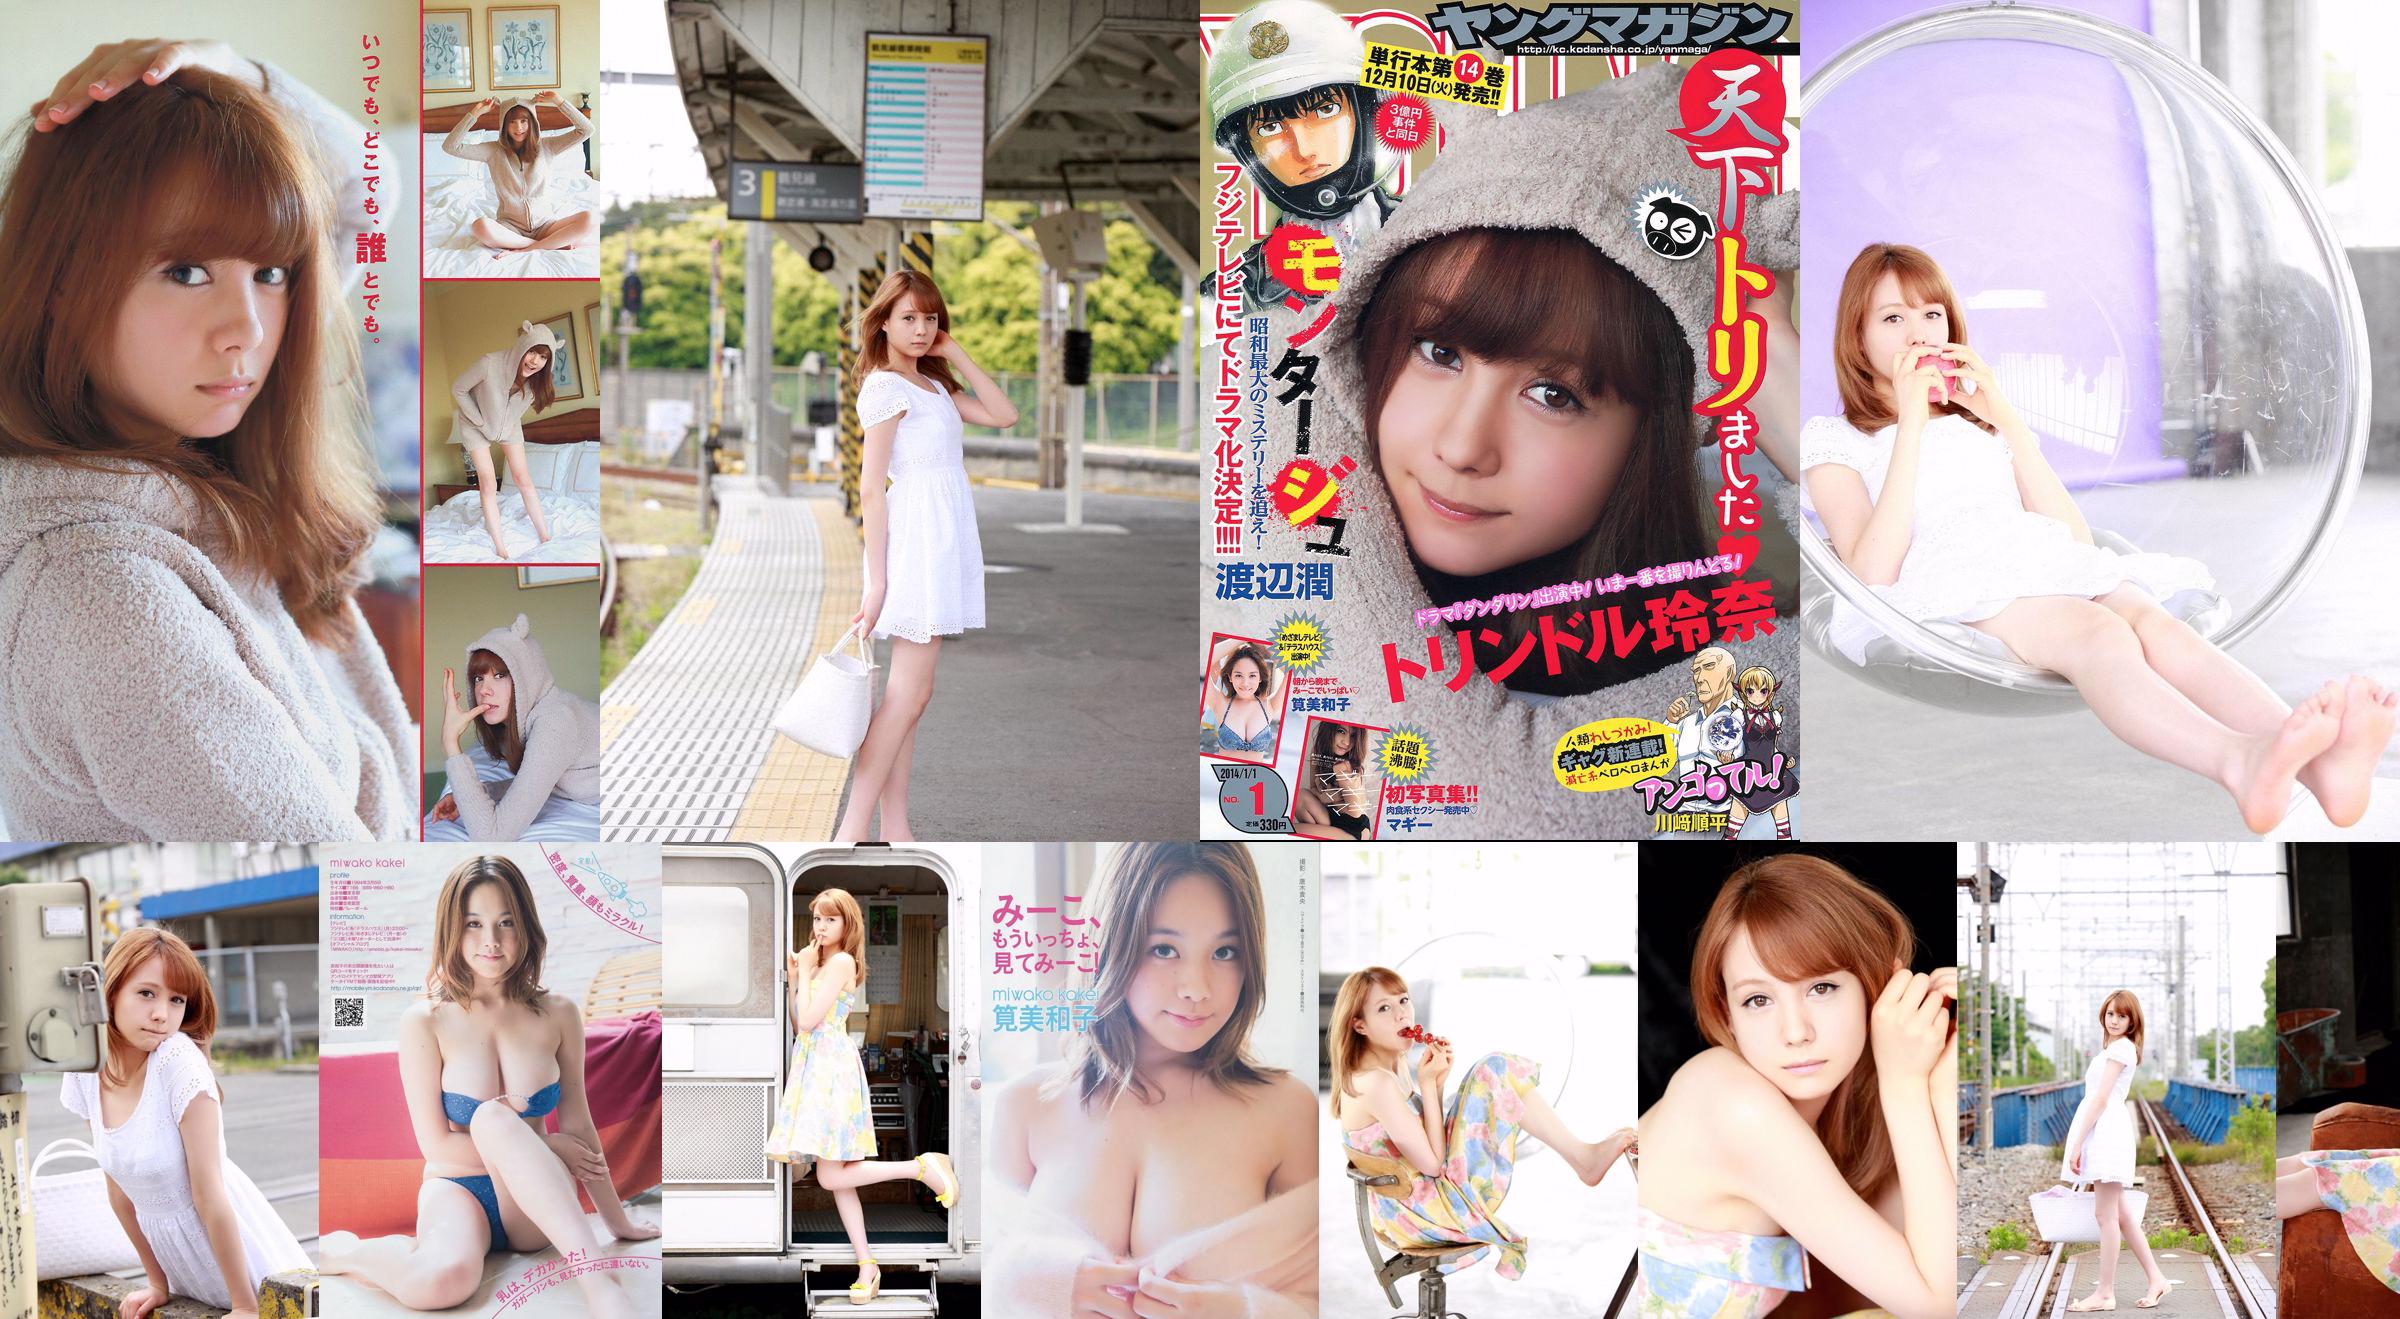 [Young Magazine] Reina Triendl Maggie Miwako Kakei 2014 nr 01 Foto No.c0f6e2 Pagina 1